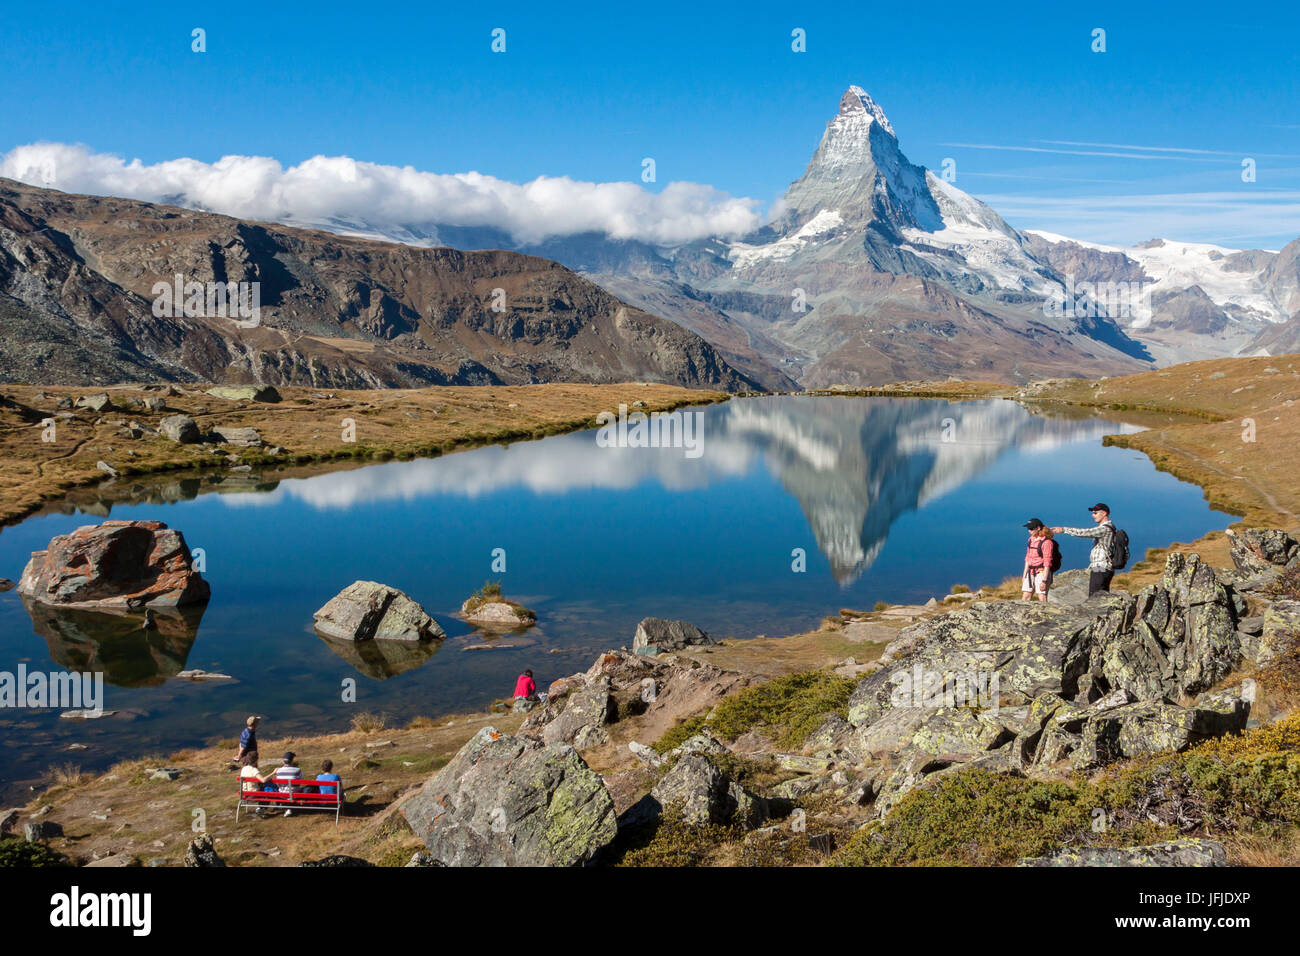 Morgen am See Stellisee am Fuße des Matterhorns, Zermatter Tal, Kanton Valais-Wallis, Schweiz Stockfoto